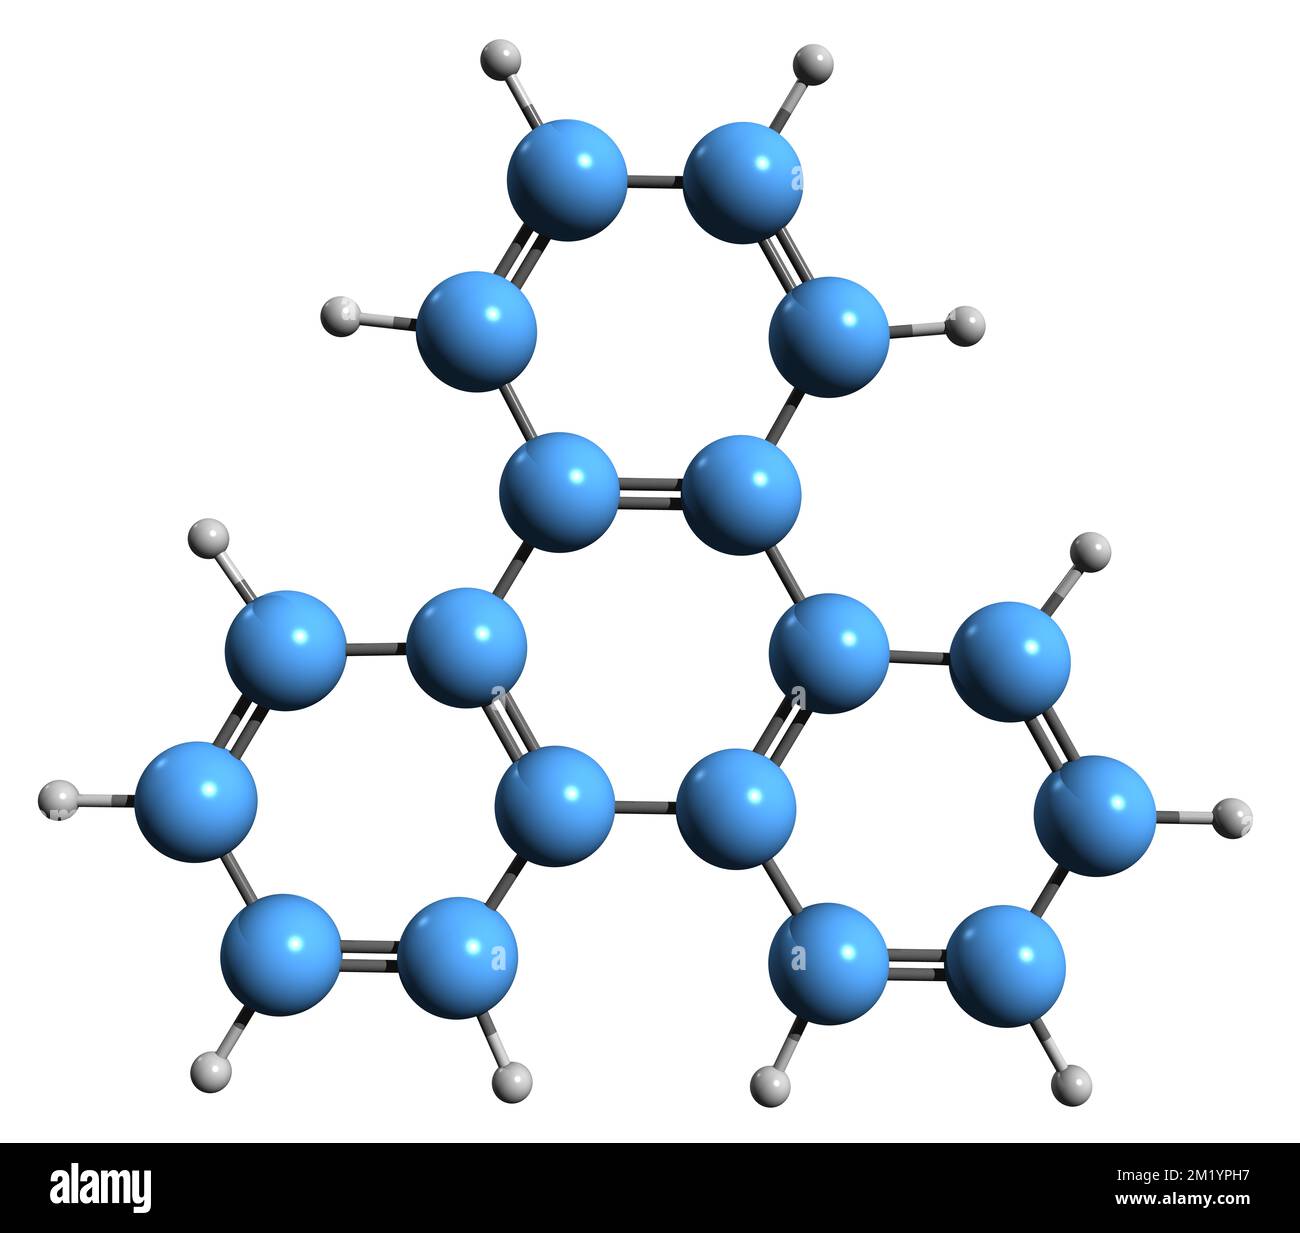 3D image of Triphenylene skeletal formula - molecular chemical structure of Benzophenanthrene isolated on white background Stock Photo